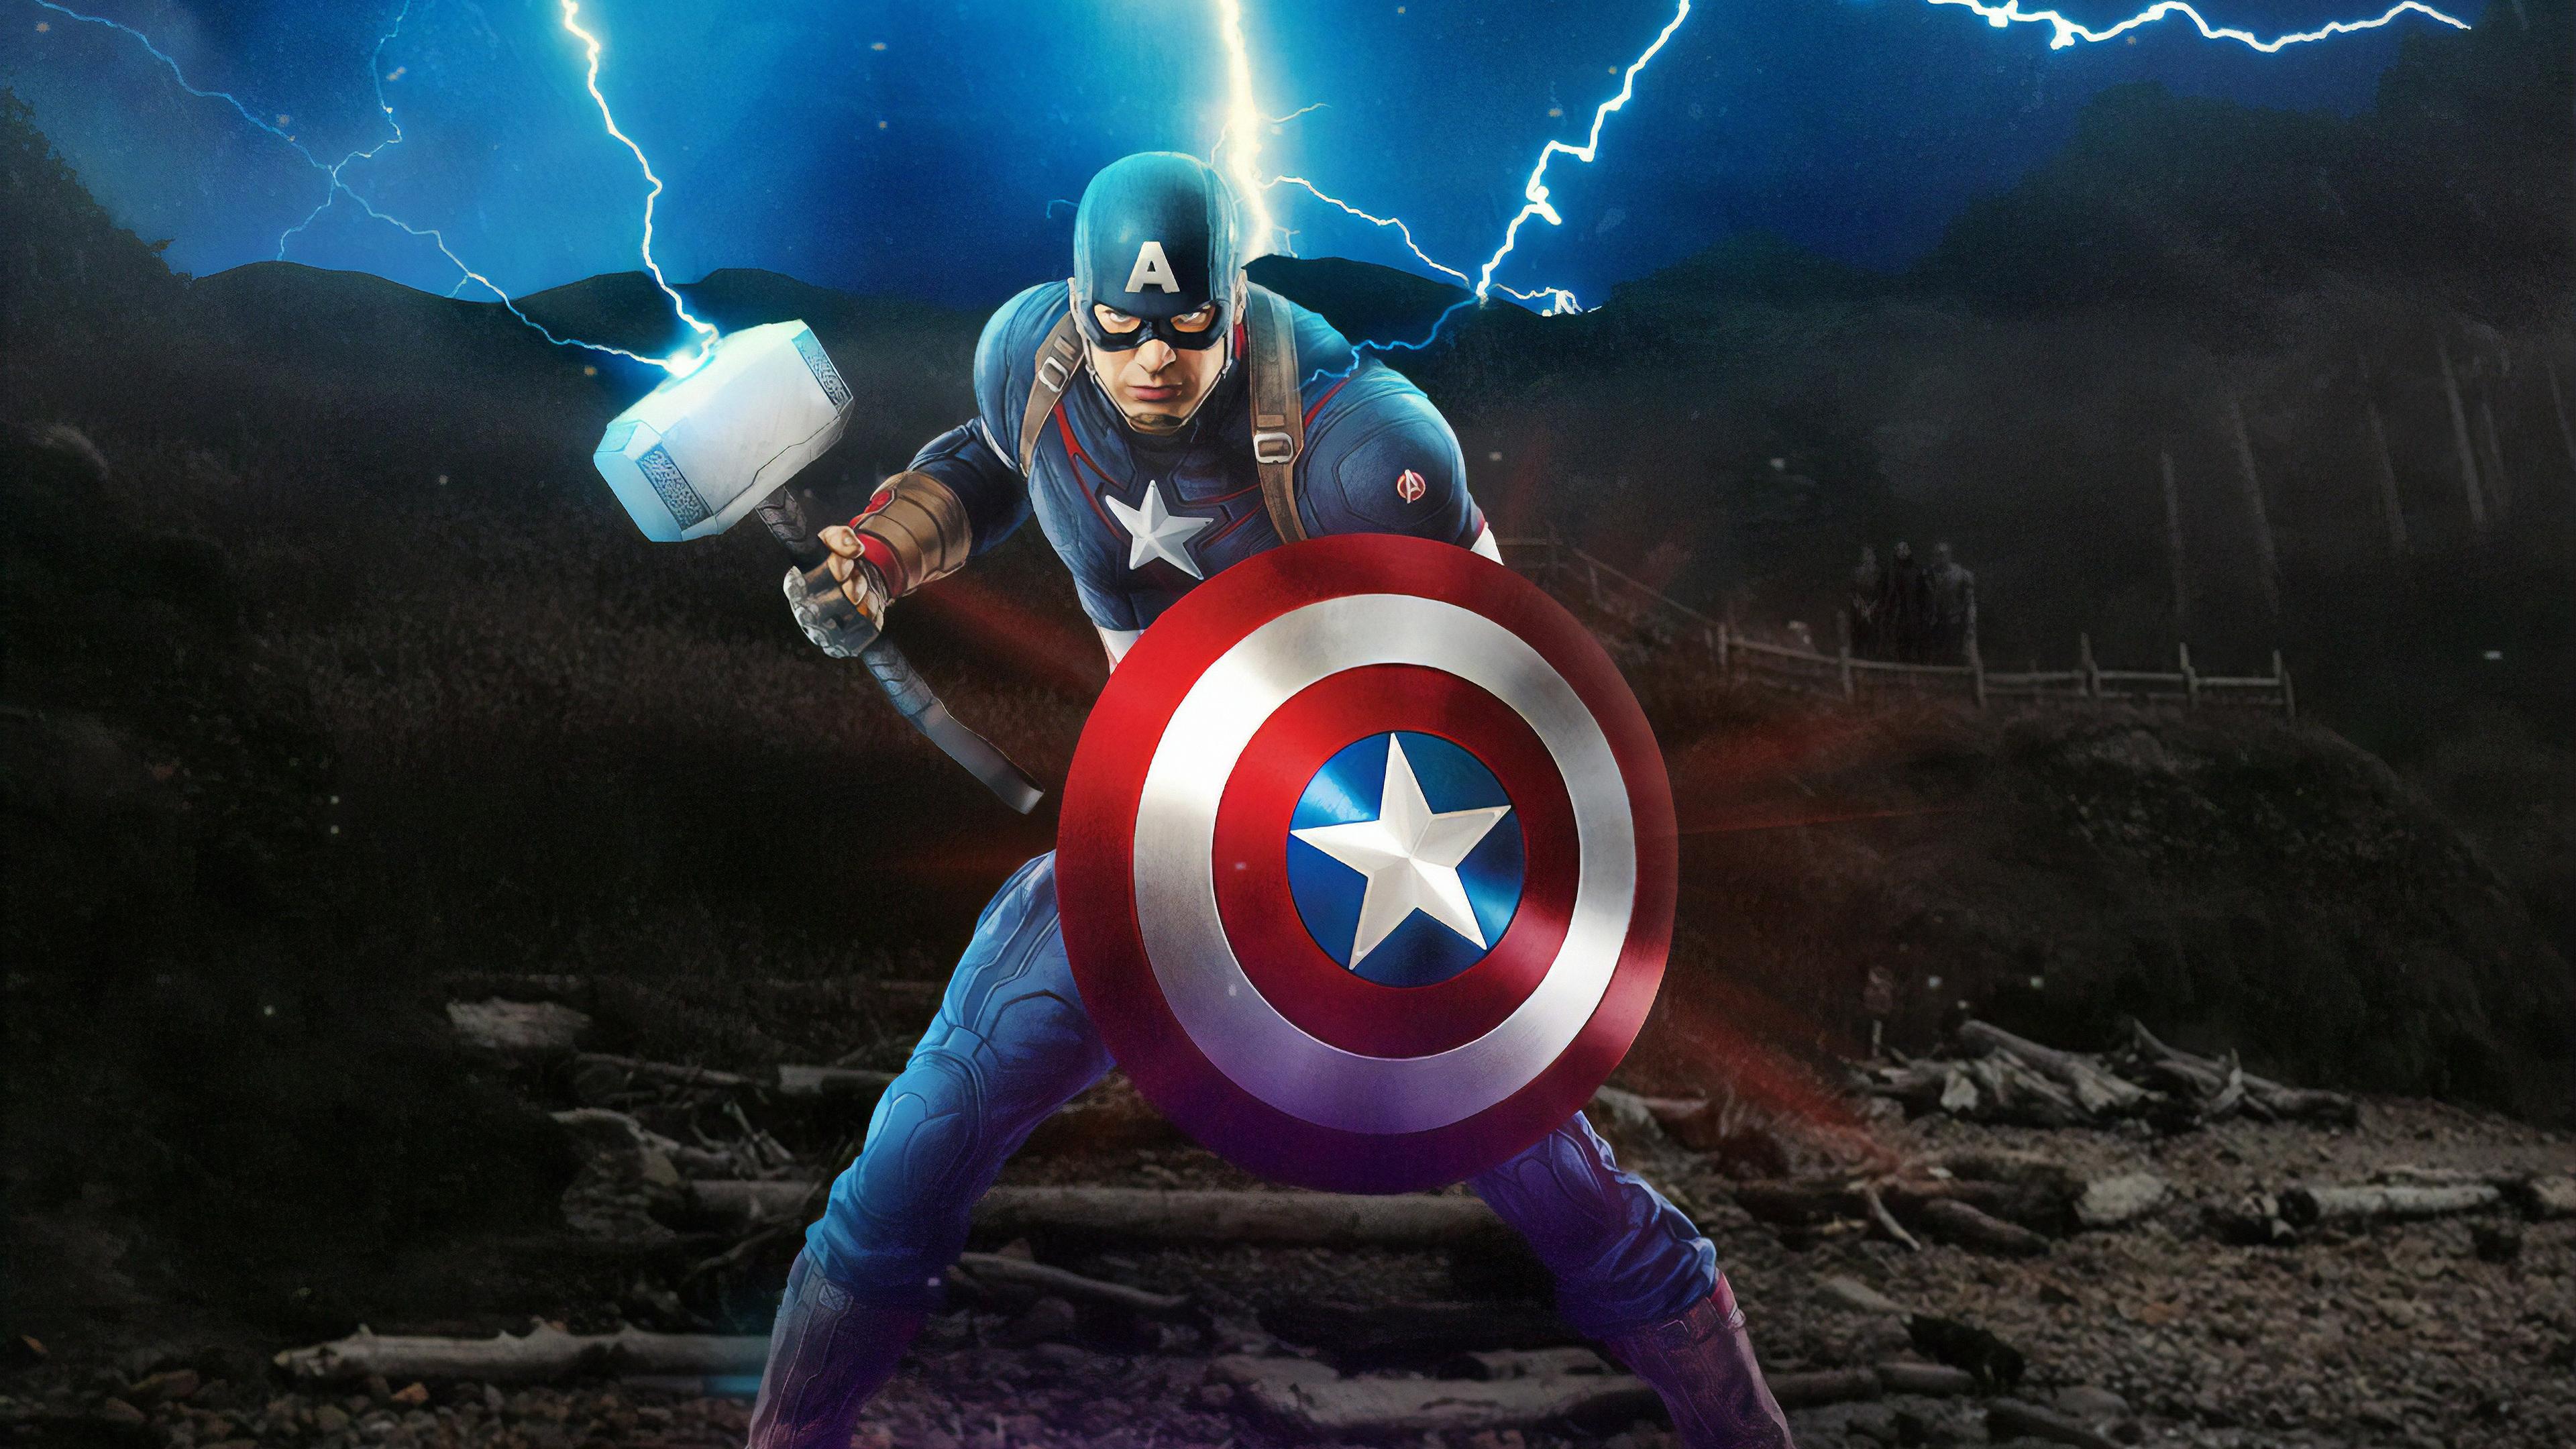 3840 x 2160 · jpeg - 1280x1024 Captain America Mjolnir Avengers Endgame 4k Artwork 1280x1024 ...